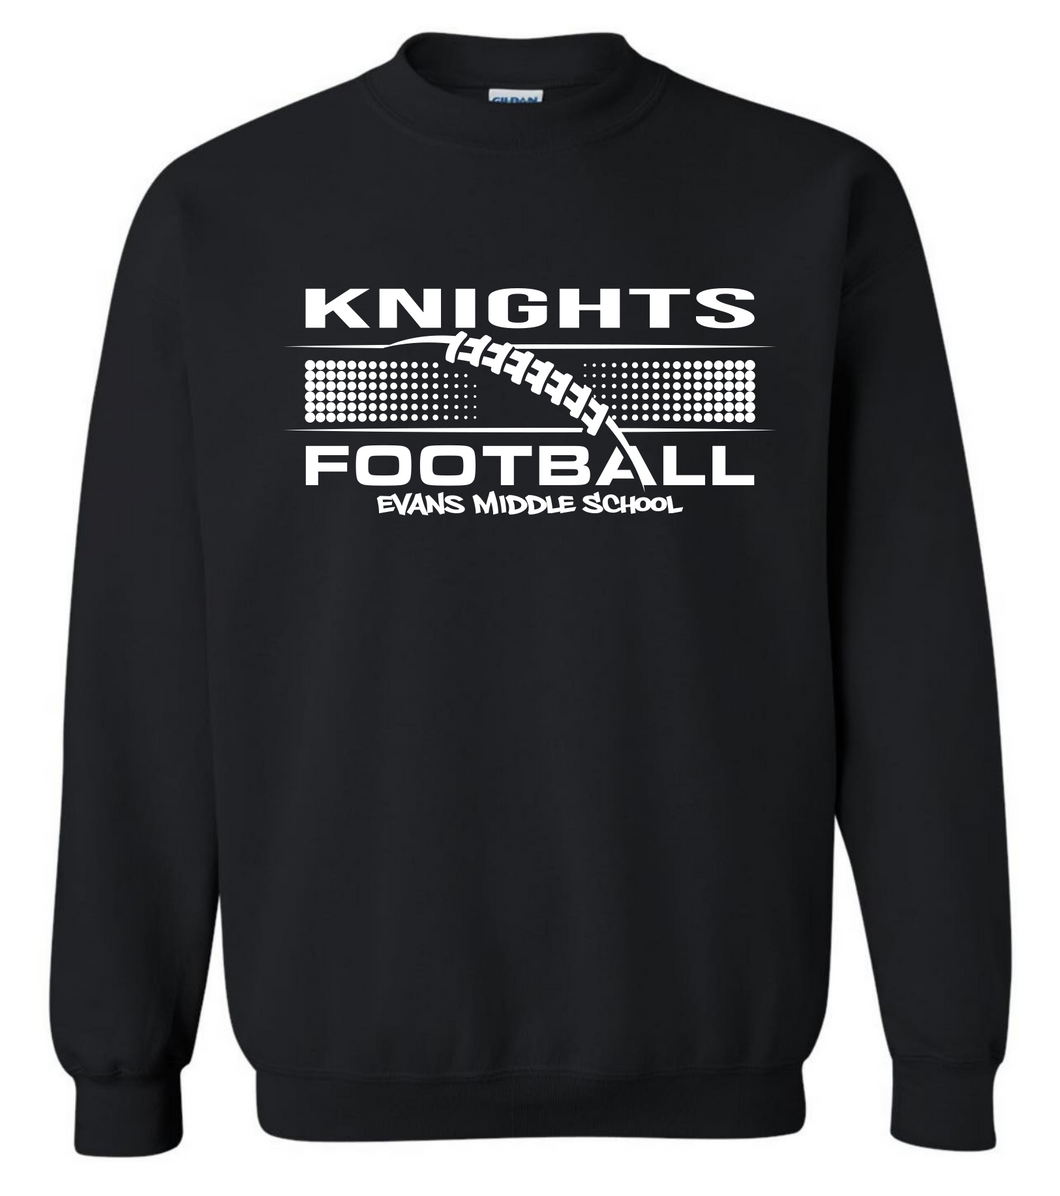 Knights Football Sweatshirt